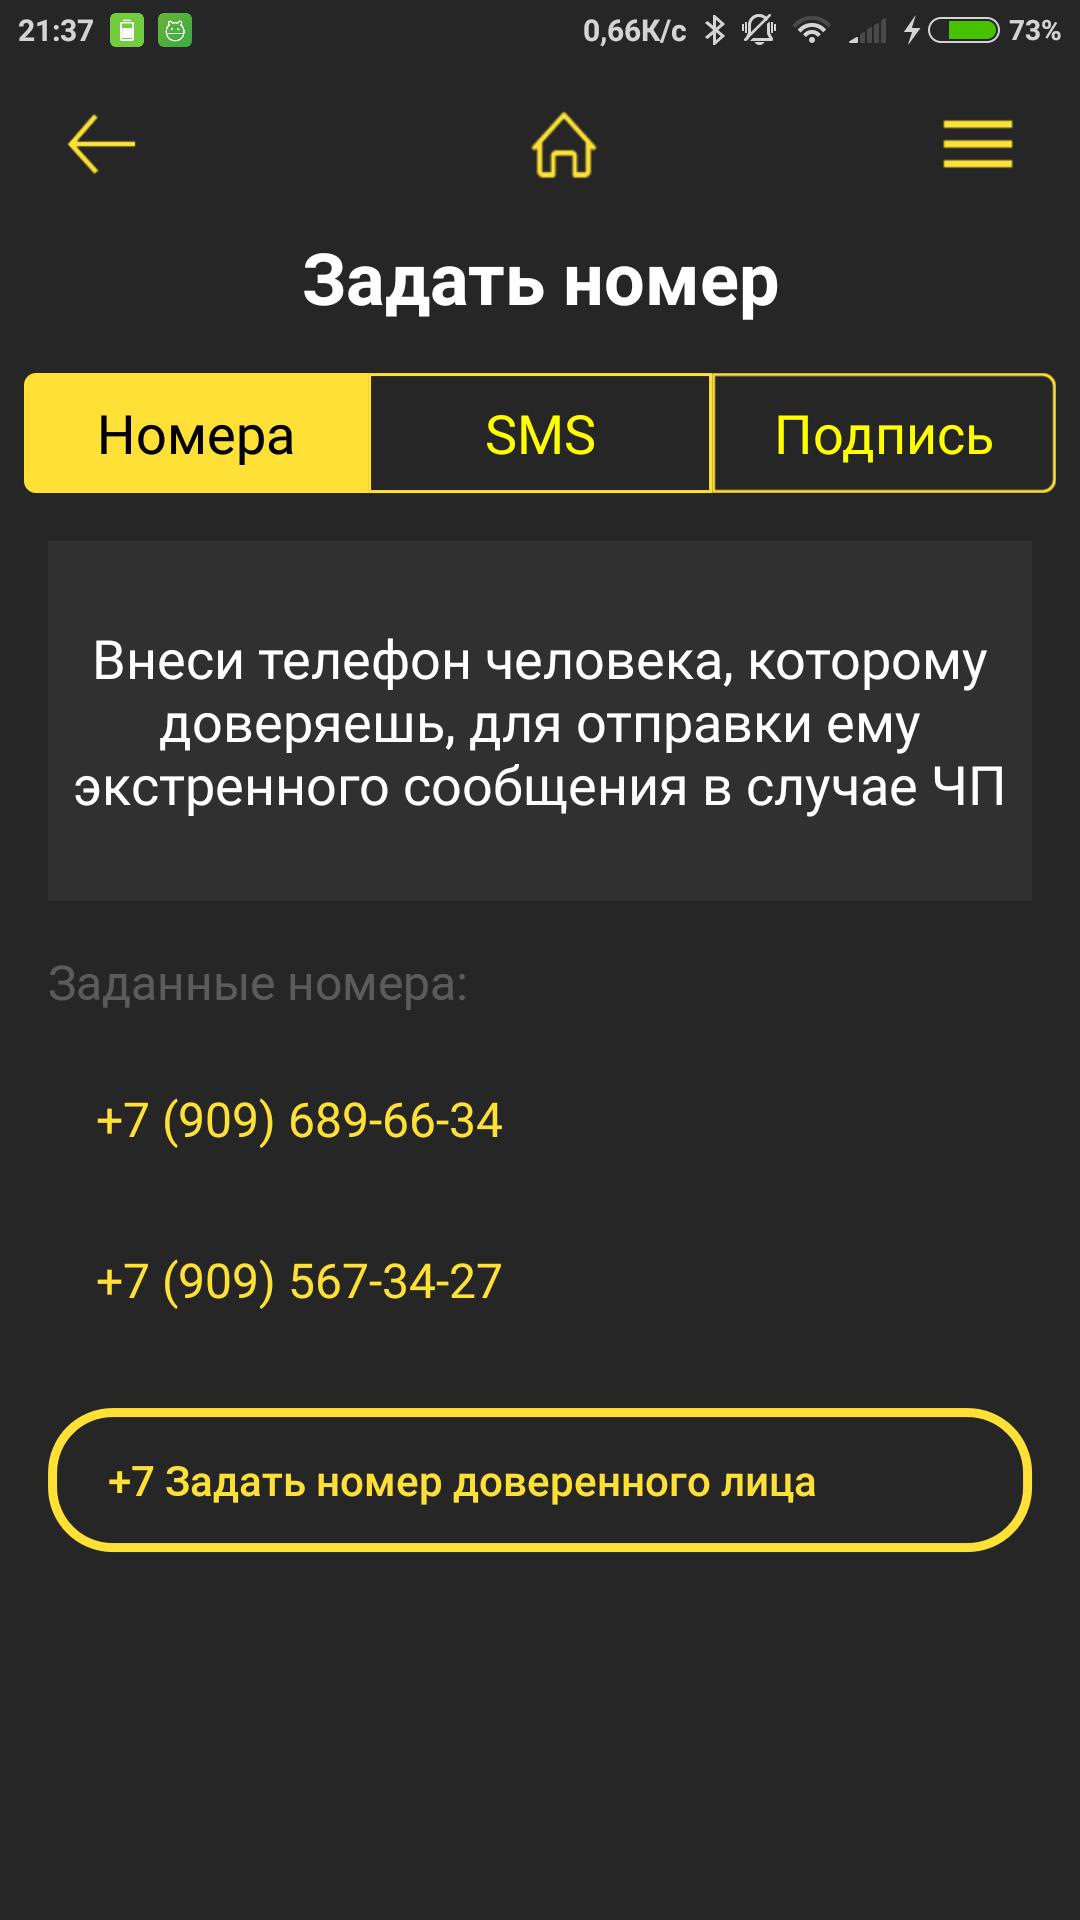 Помощь рядом РФ приложение. Внести телефон в базу